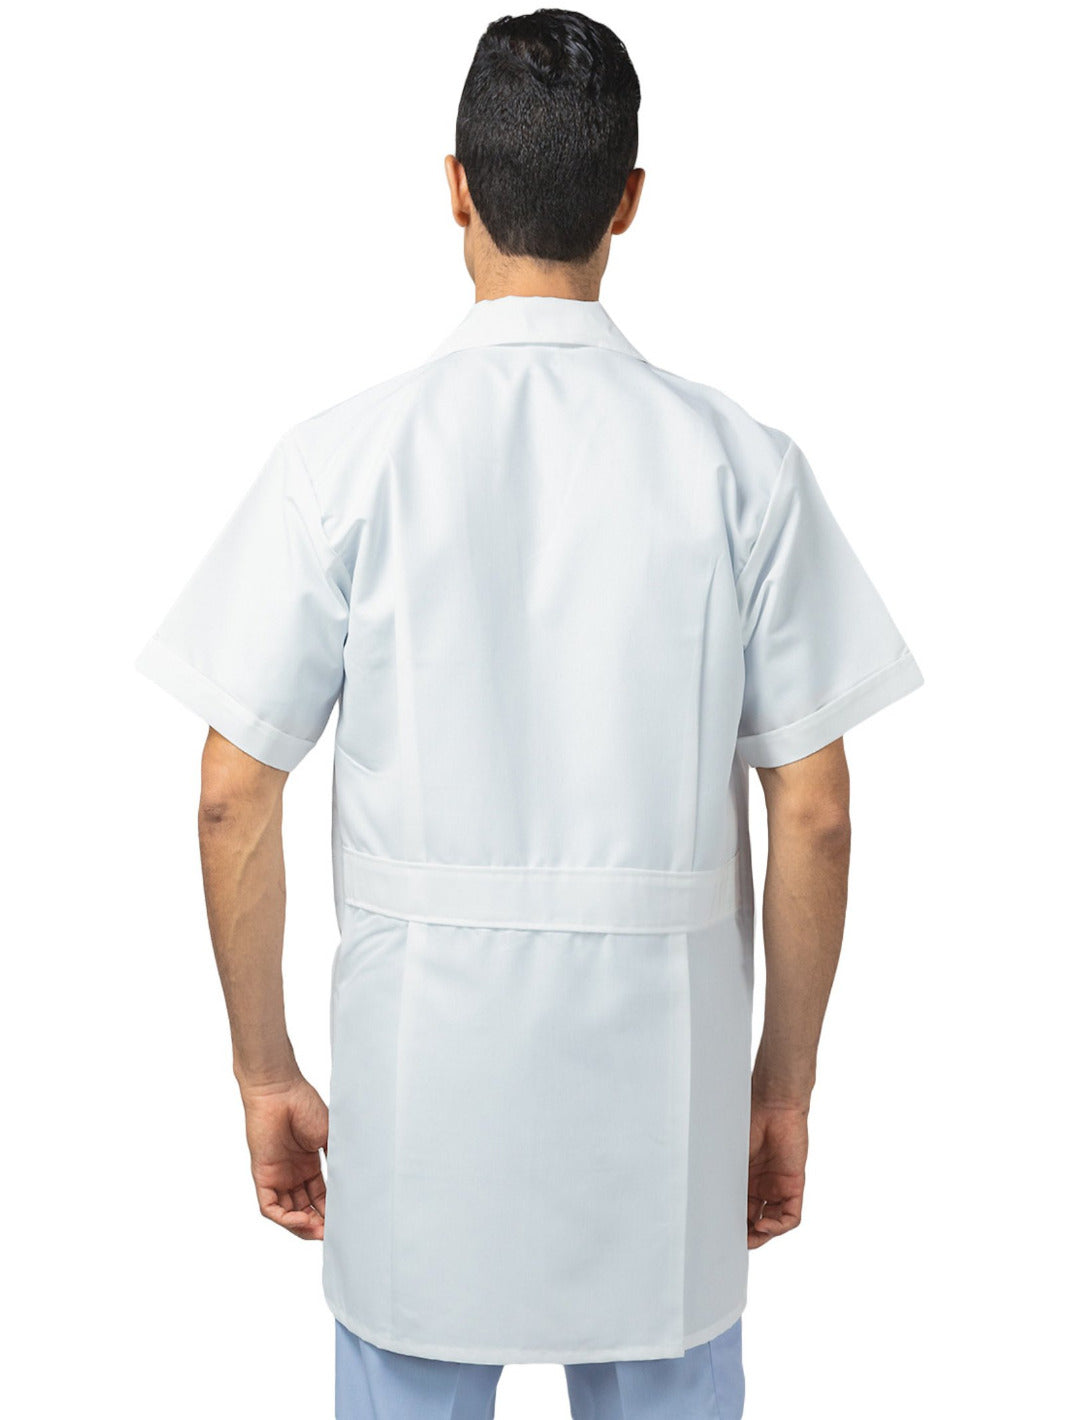 Hombre de espaldas vistiendo bata blanca de laboratorio de manga corta, largo tres cuartos, con tres bolsas al frente, cinto pegado en la espalda, y tablones invertidos. 